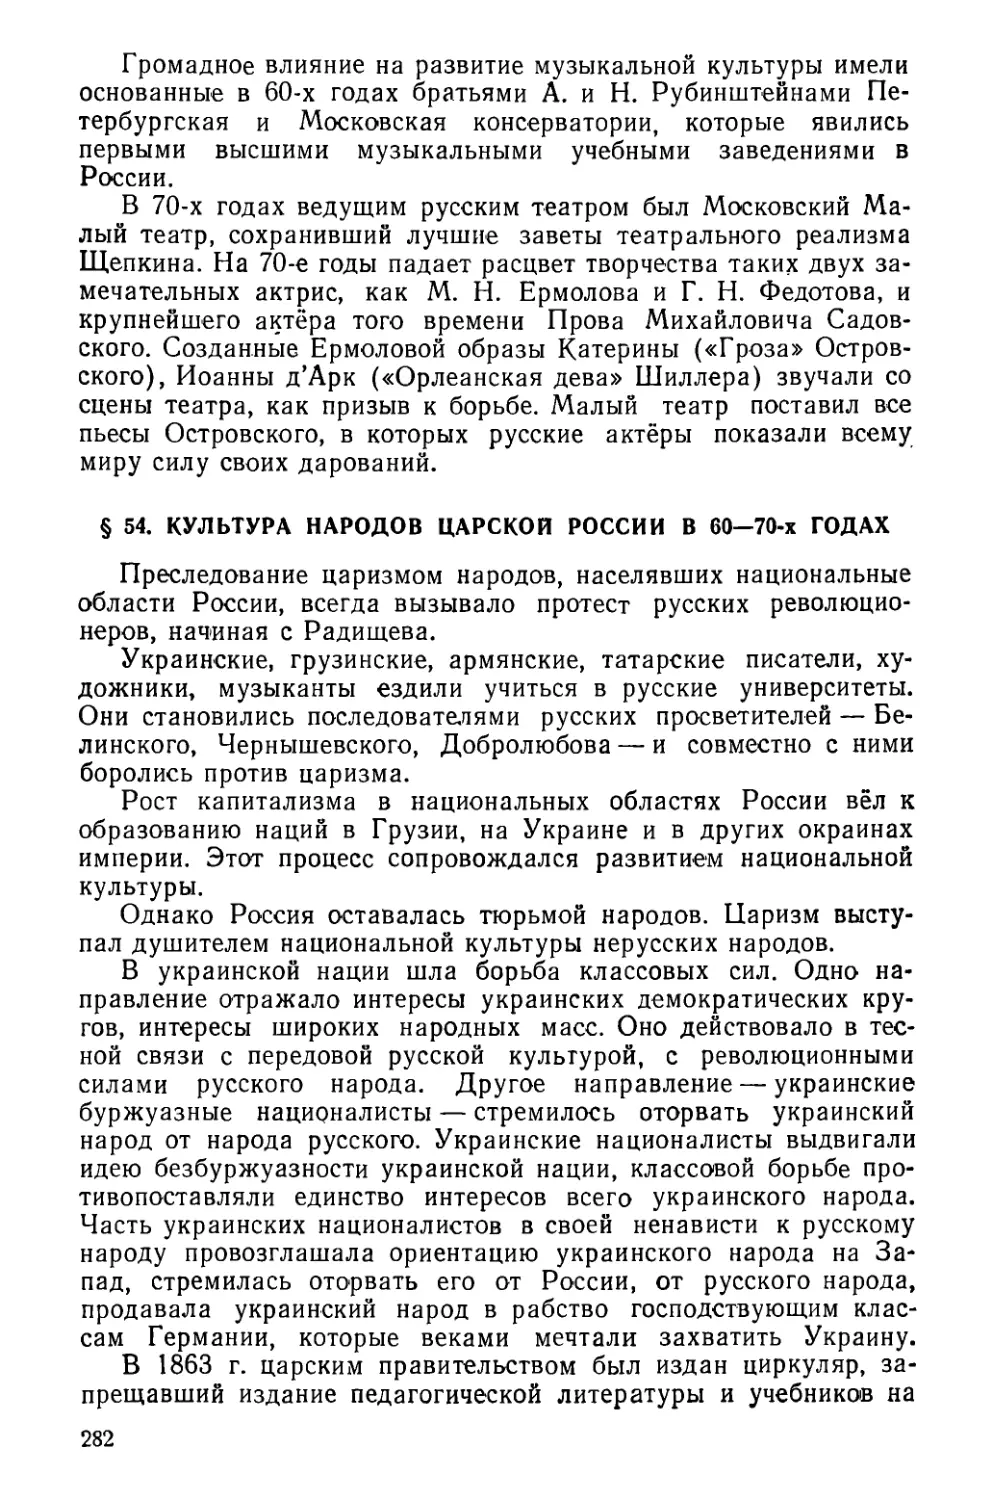 § 54. Культура народов царской России в 60—70-х годах